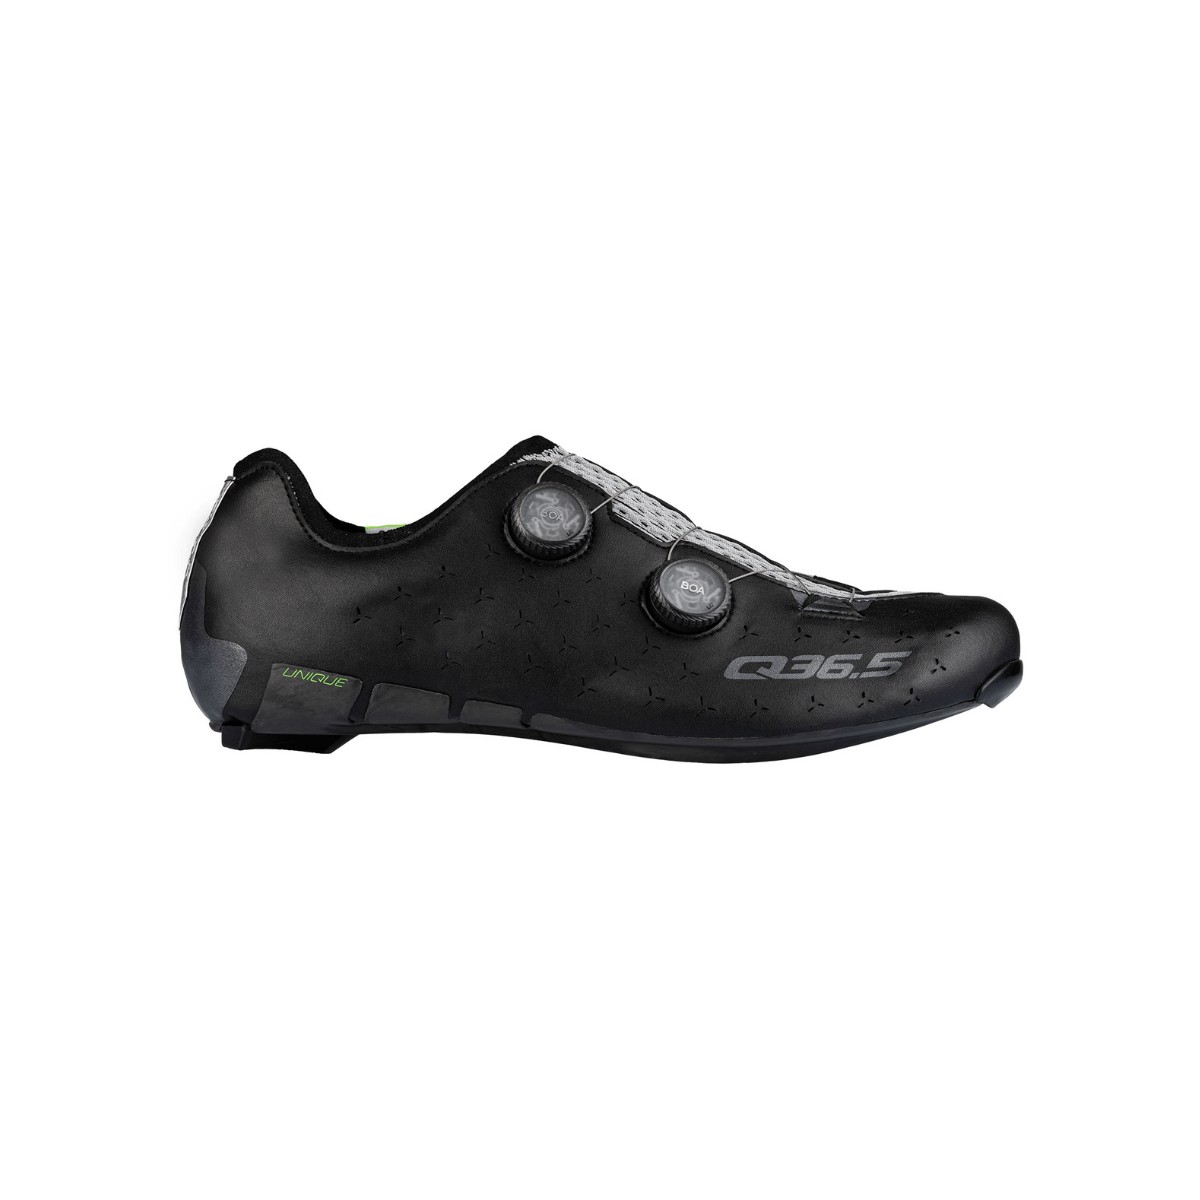 Q36.5 Unique Road Shoes Black, Size 41 - EUR